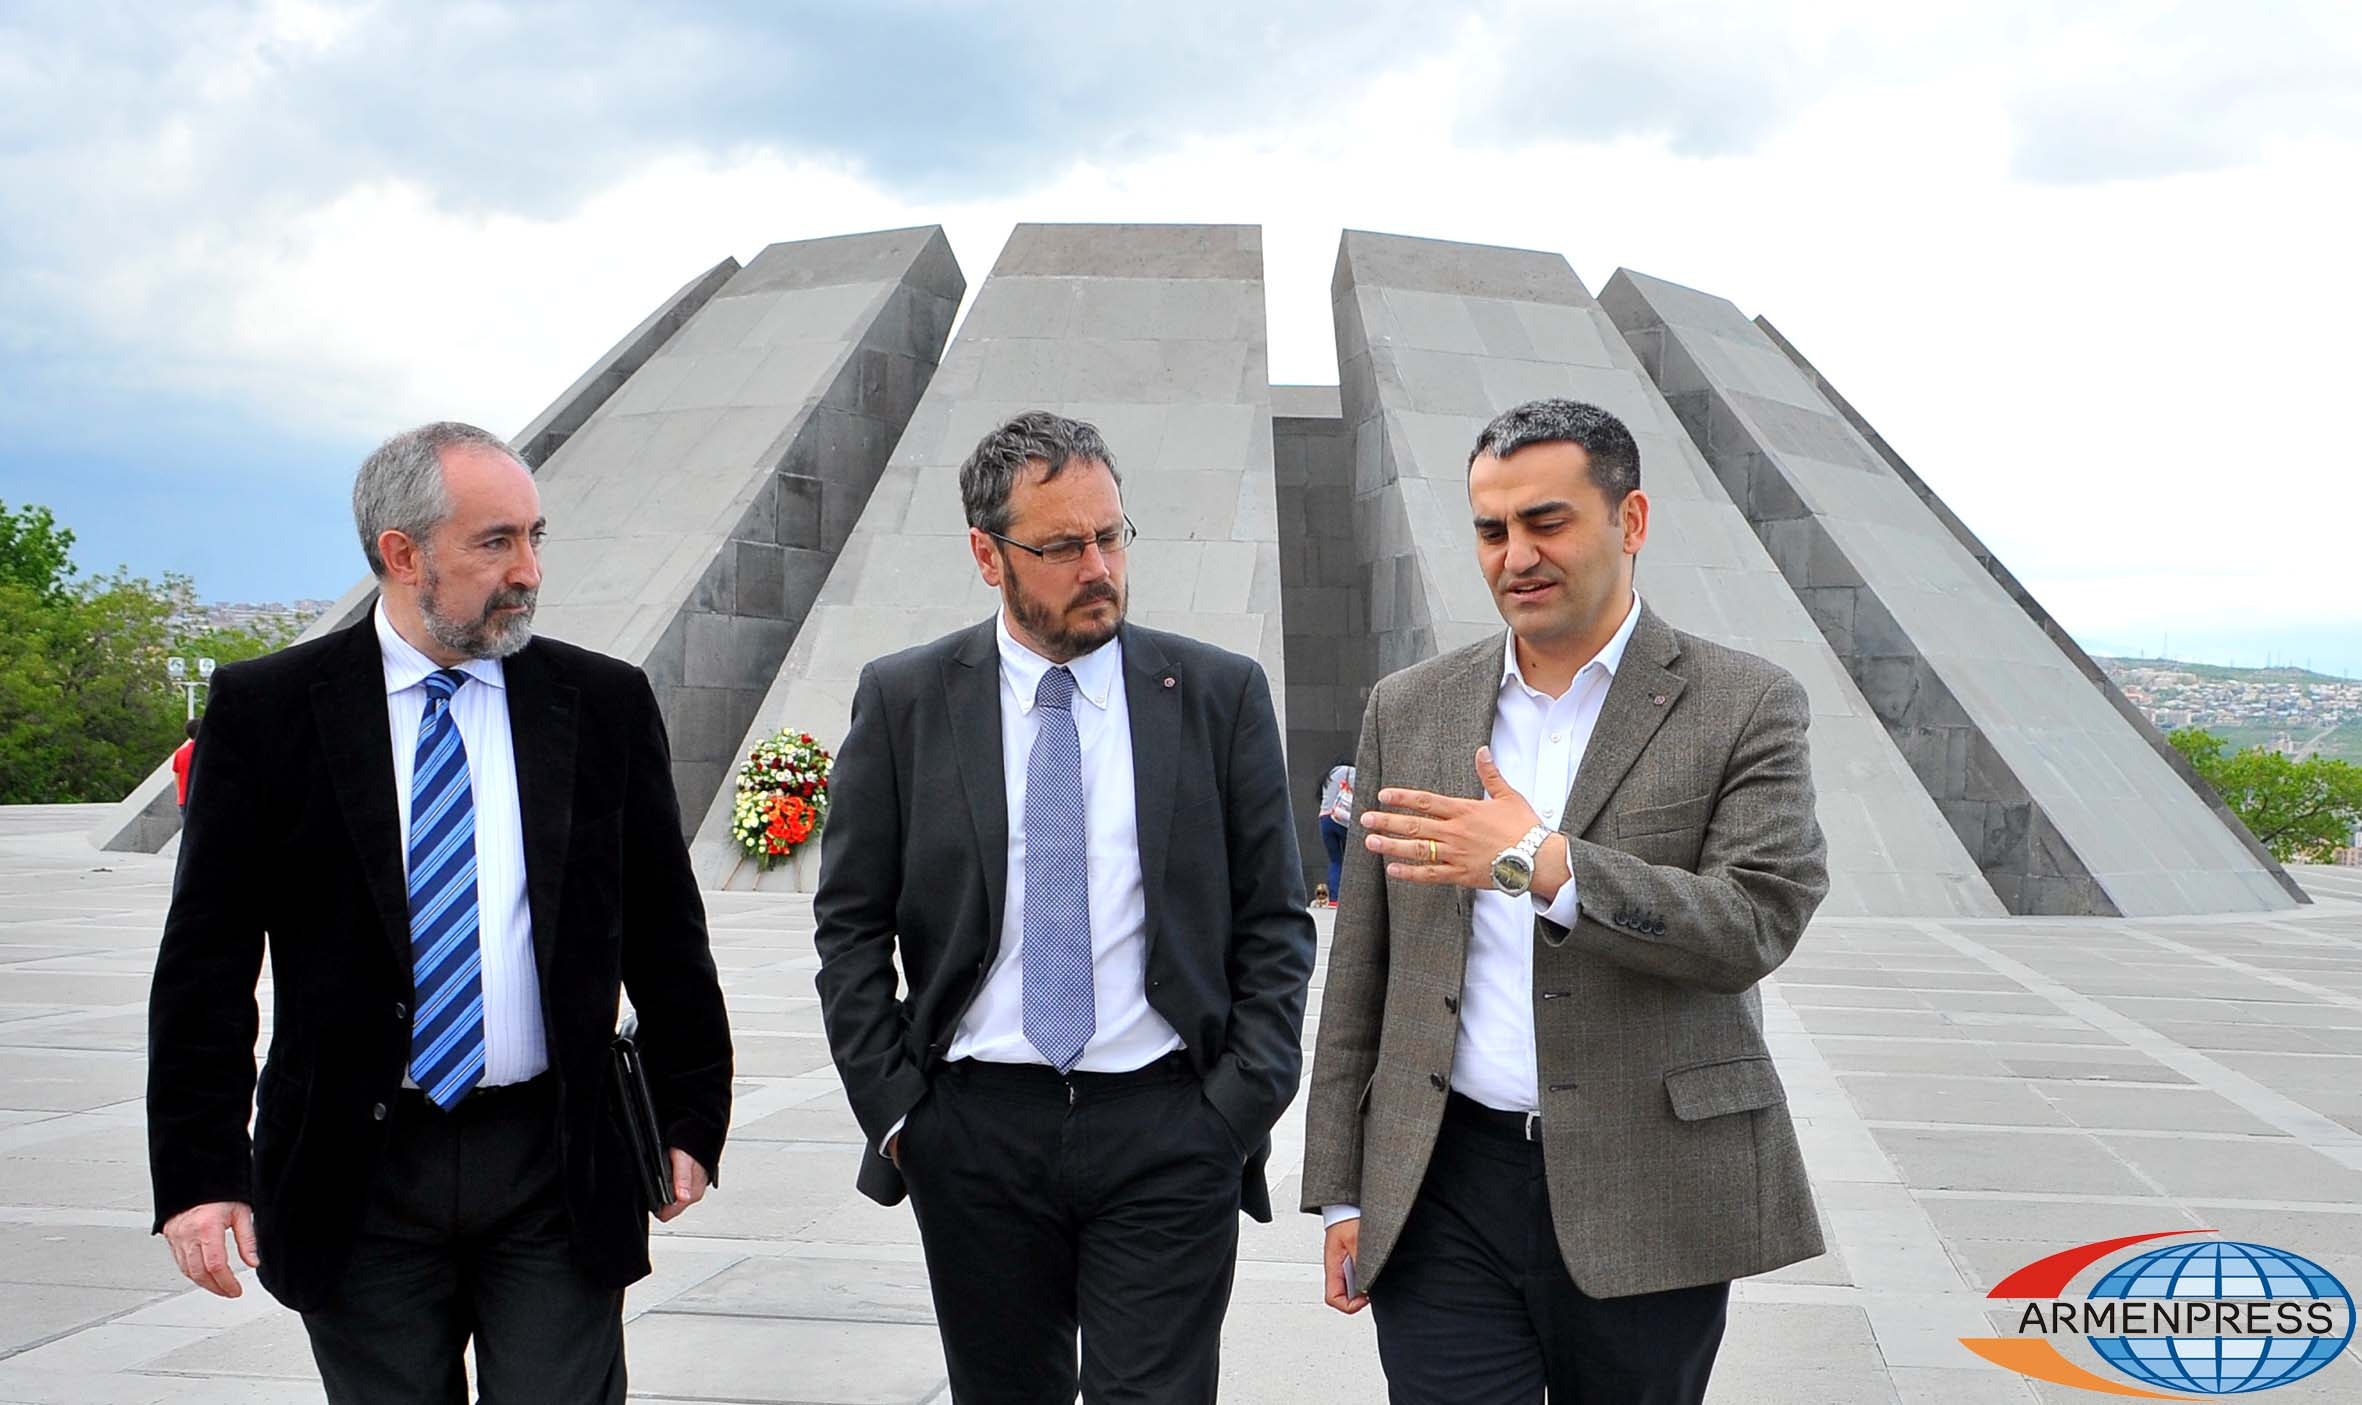 Законодатели Испании обещают поднять вопрос о признании Геноцида армян на всех 
площадках